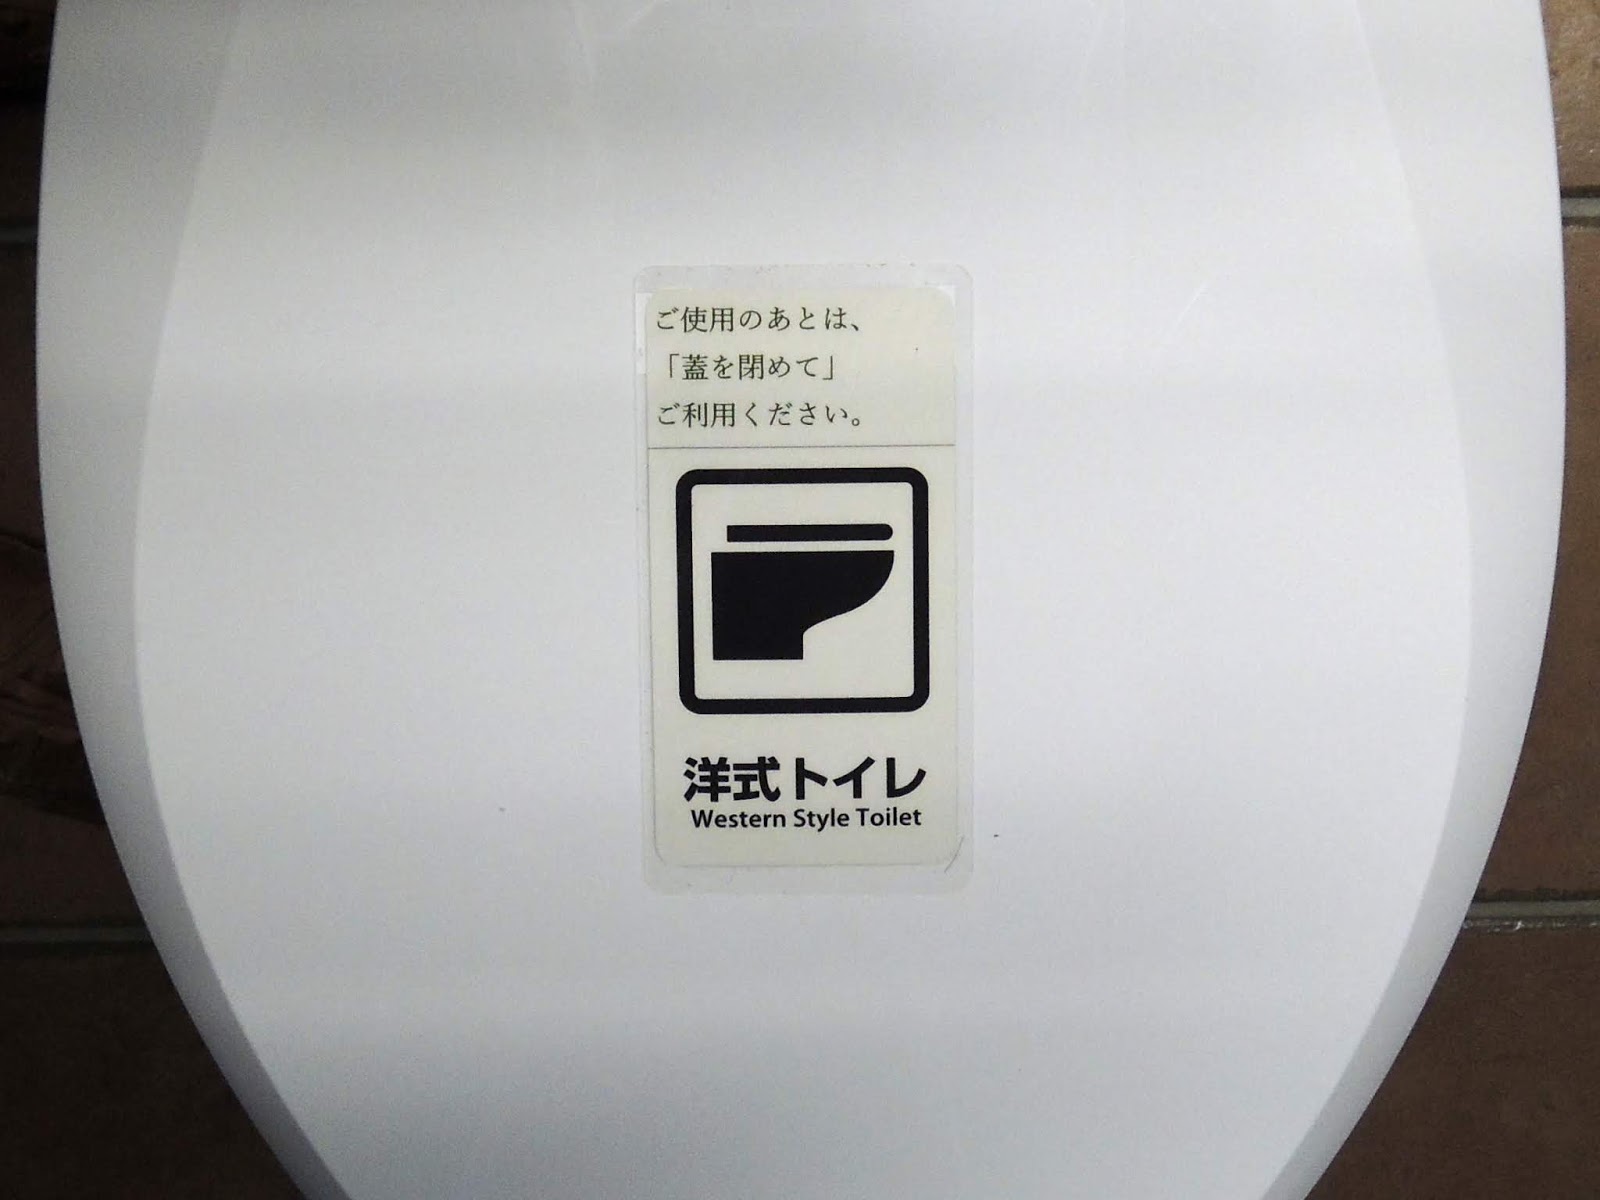 巴里のキオスクから ある西洋式トイレの蓋に貼られた注意書き